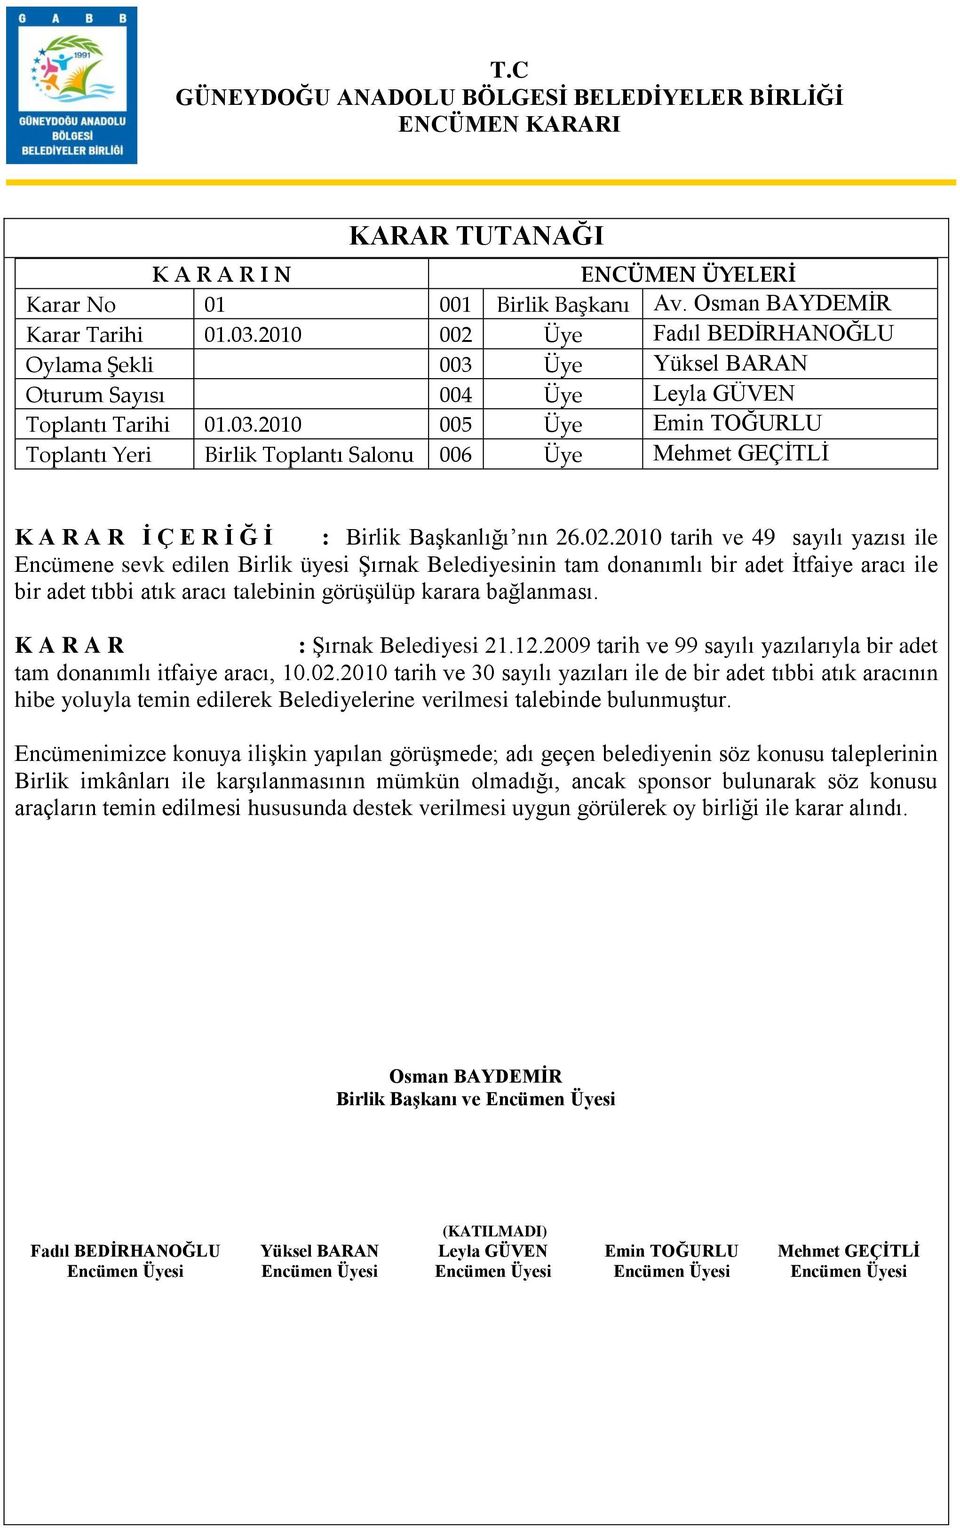 : ġırnak Belediyesi 21.12.2009 tarih ve 99 sayılı yazılarıyla bir adet tam donanımlı itfaiye aracı, 10.02.